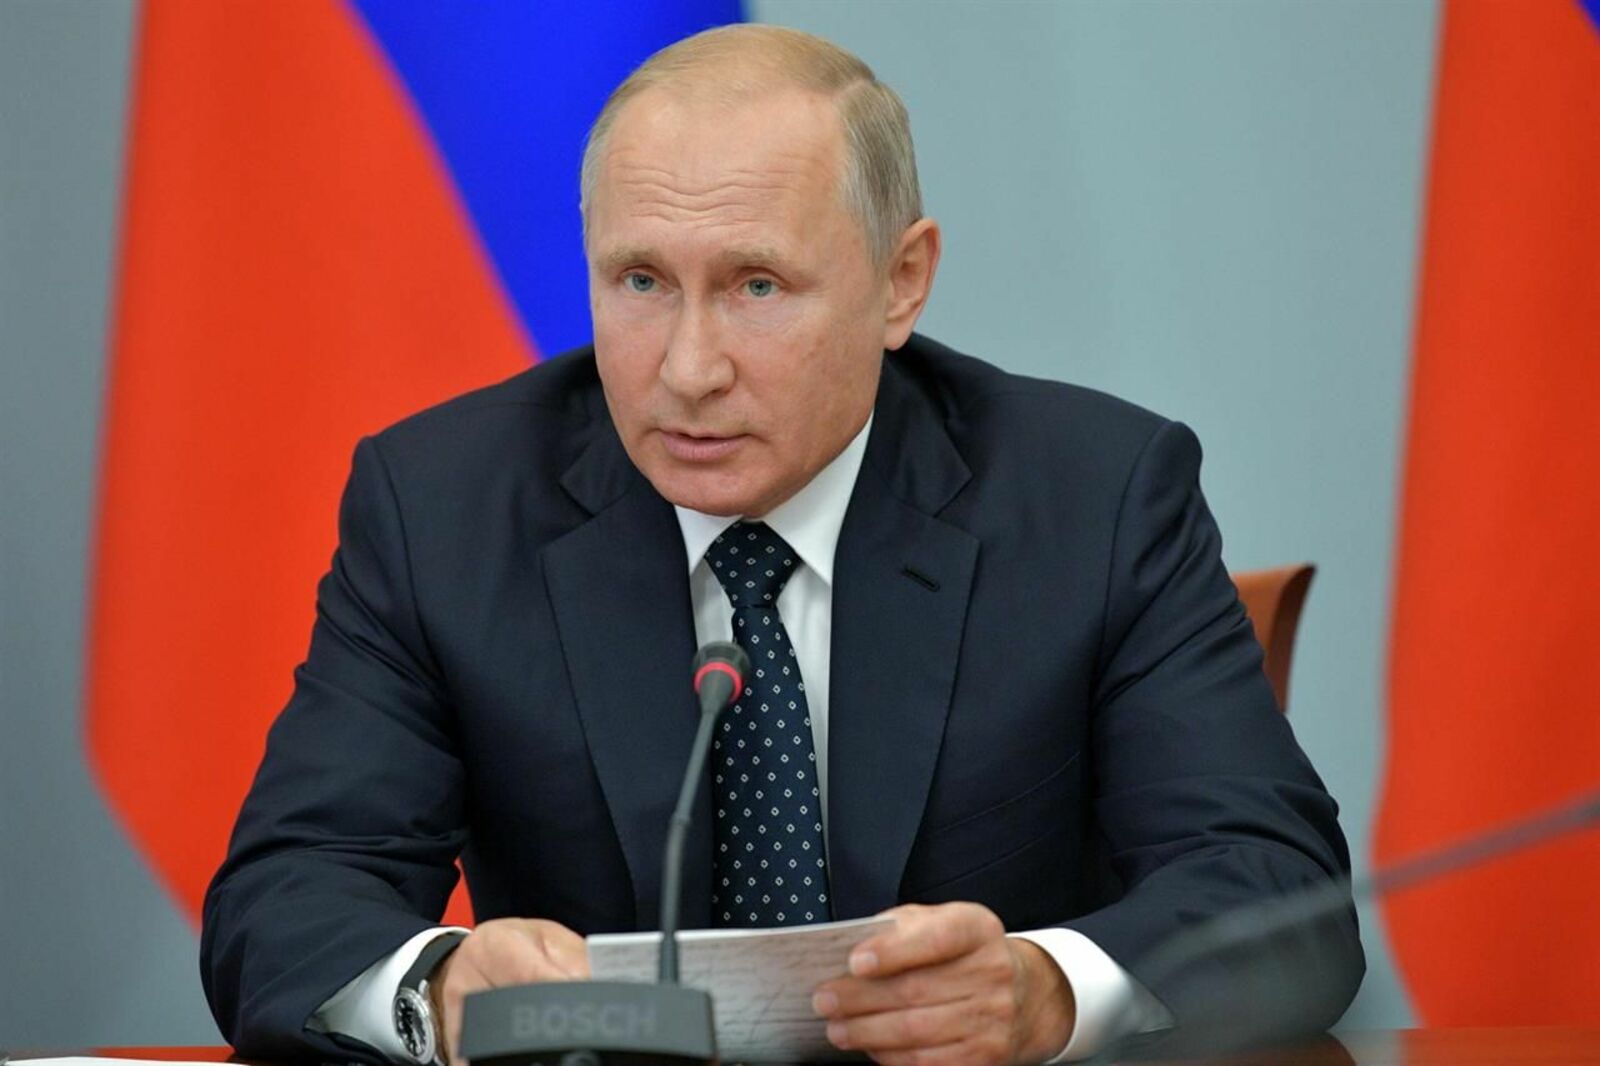 Путин подписал указ о мерах поддержки семей военнослужащих